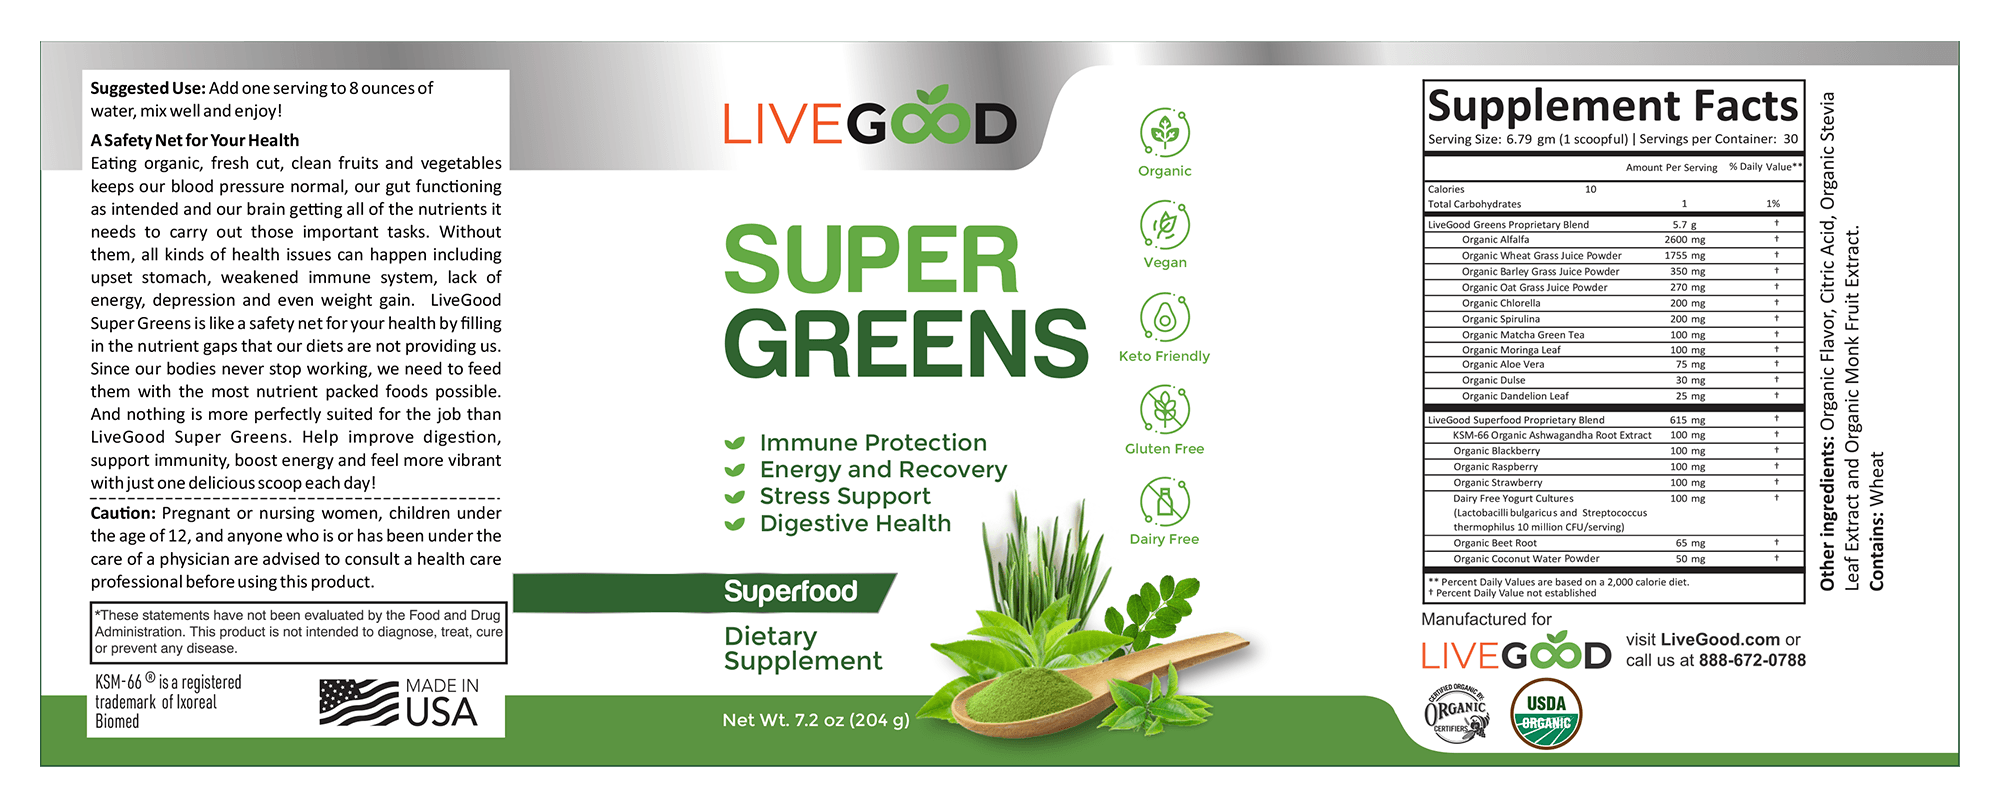 LIVEGOOD Organic Super Greens Review